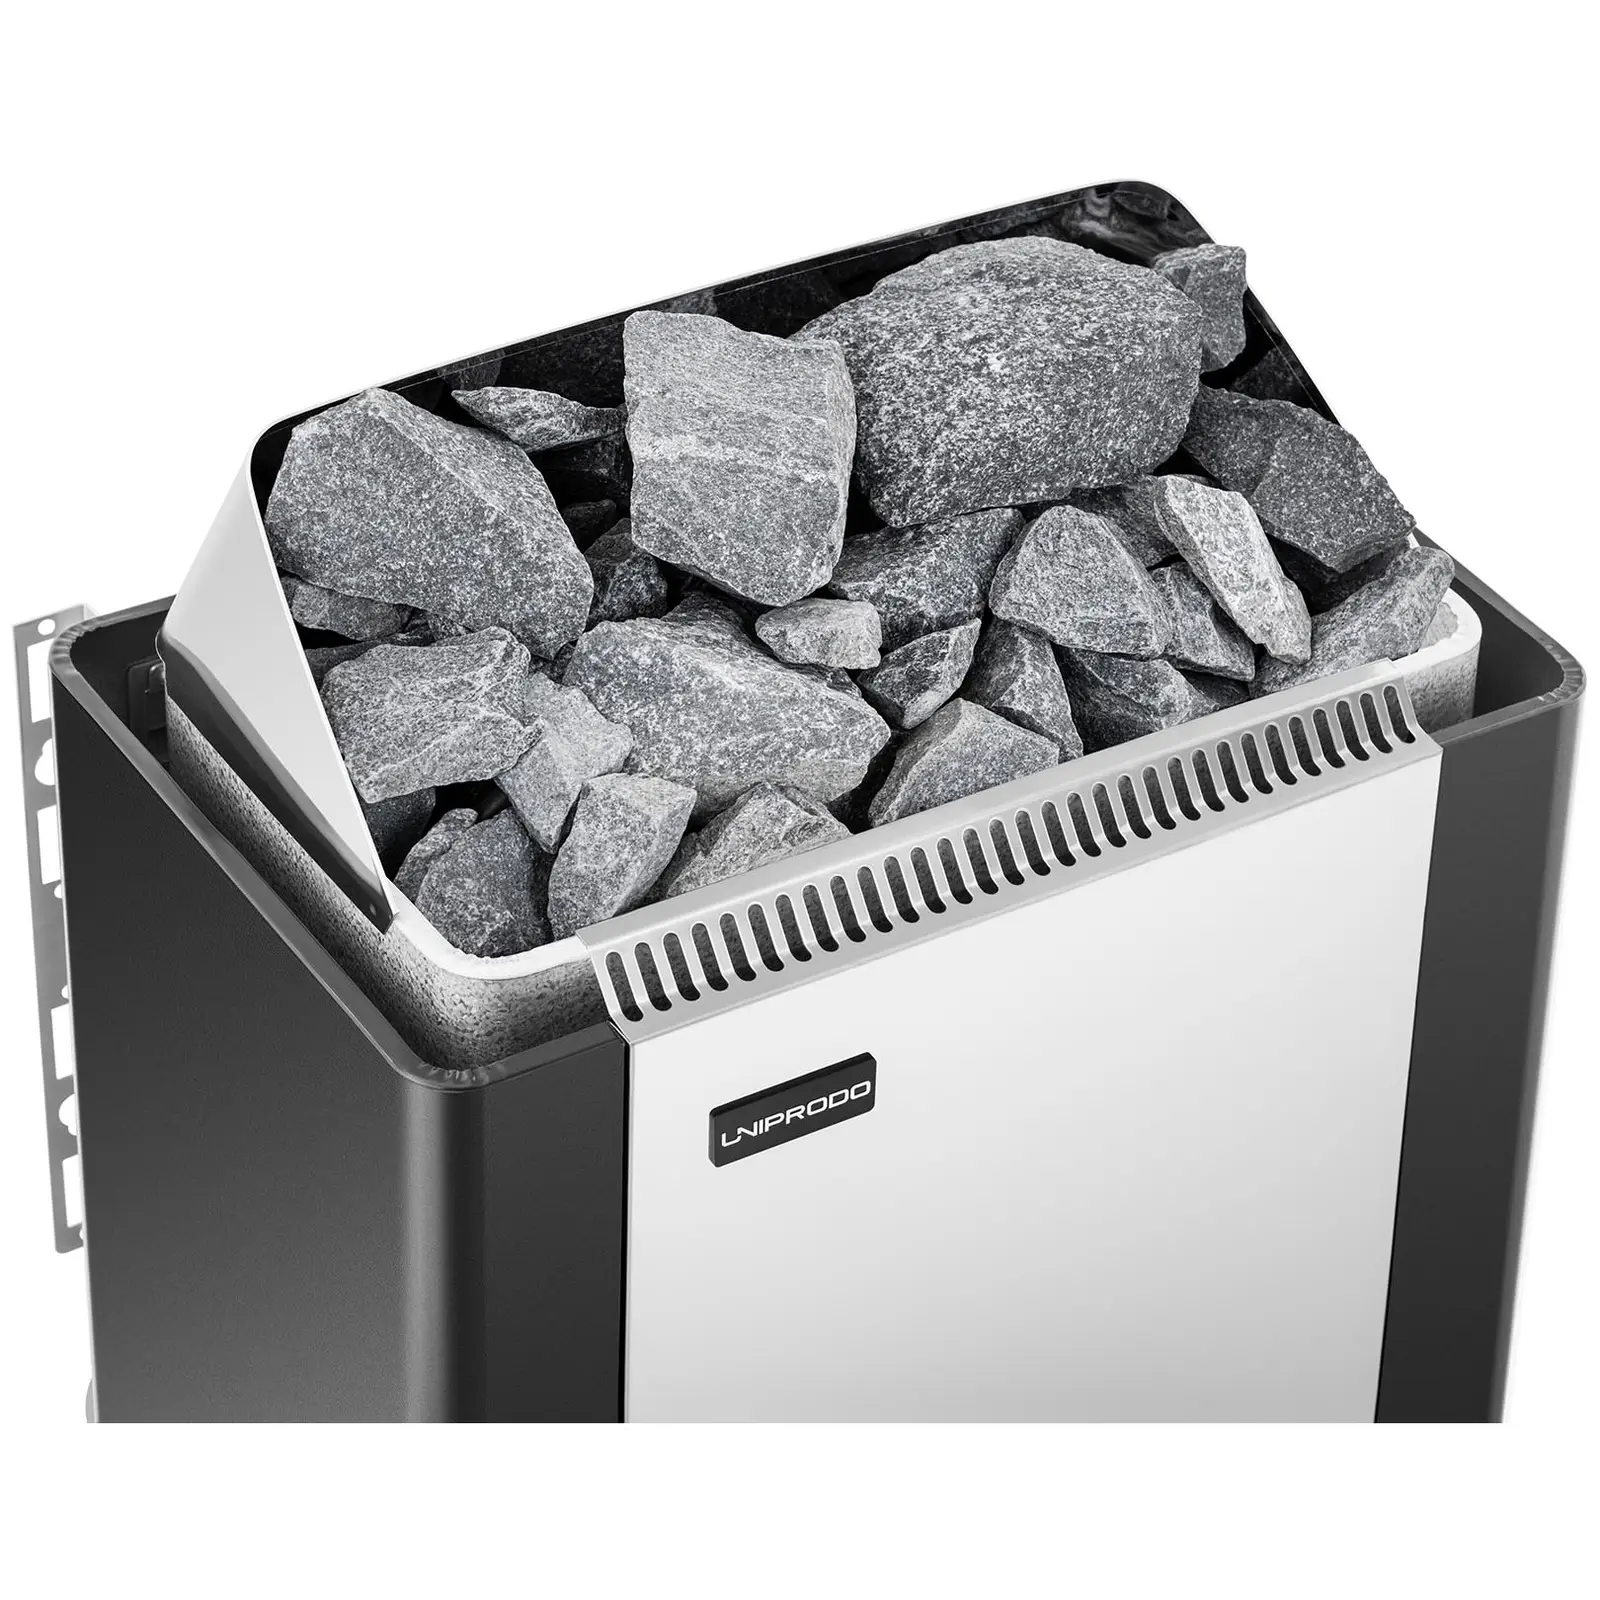 Saunová kamna - 9 kW - 30 až 110 °C - se zabudovaným ovládáním